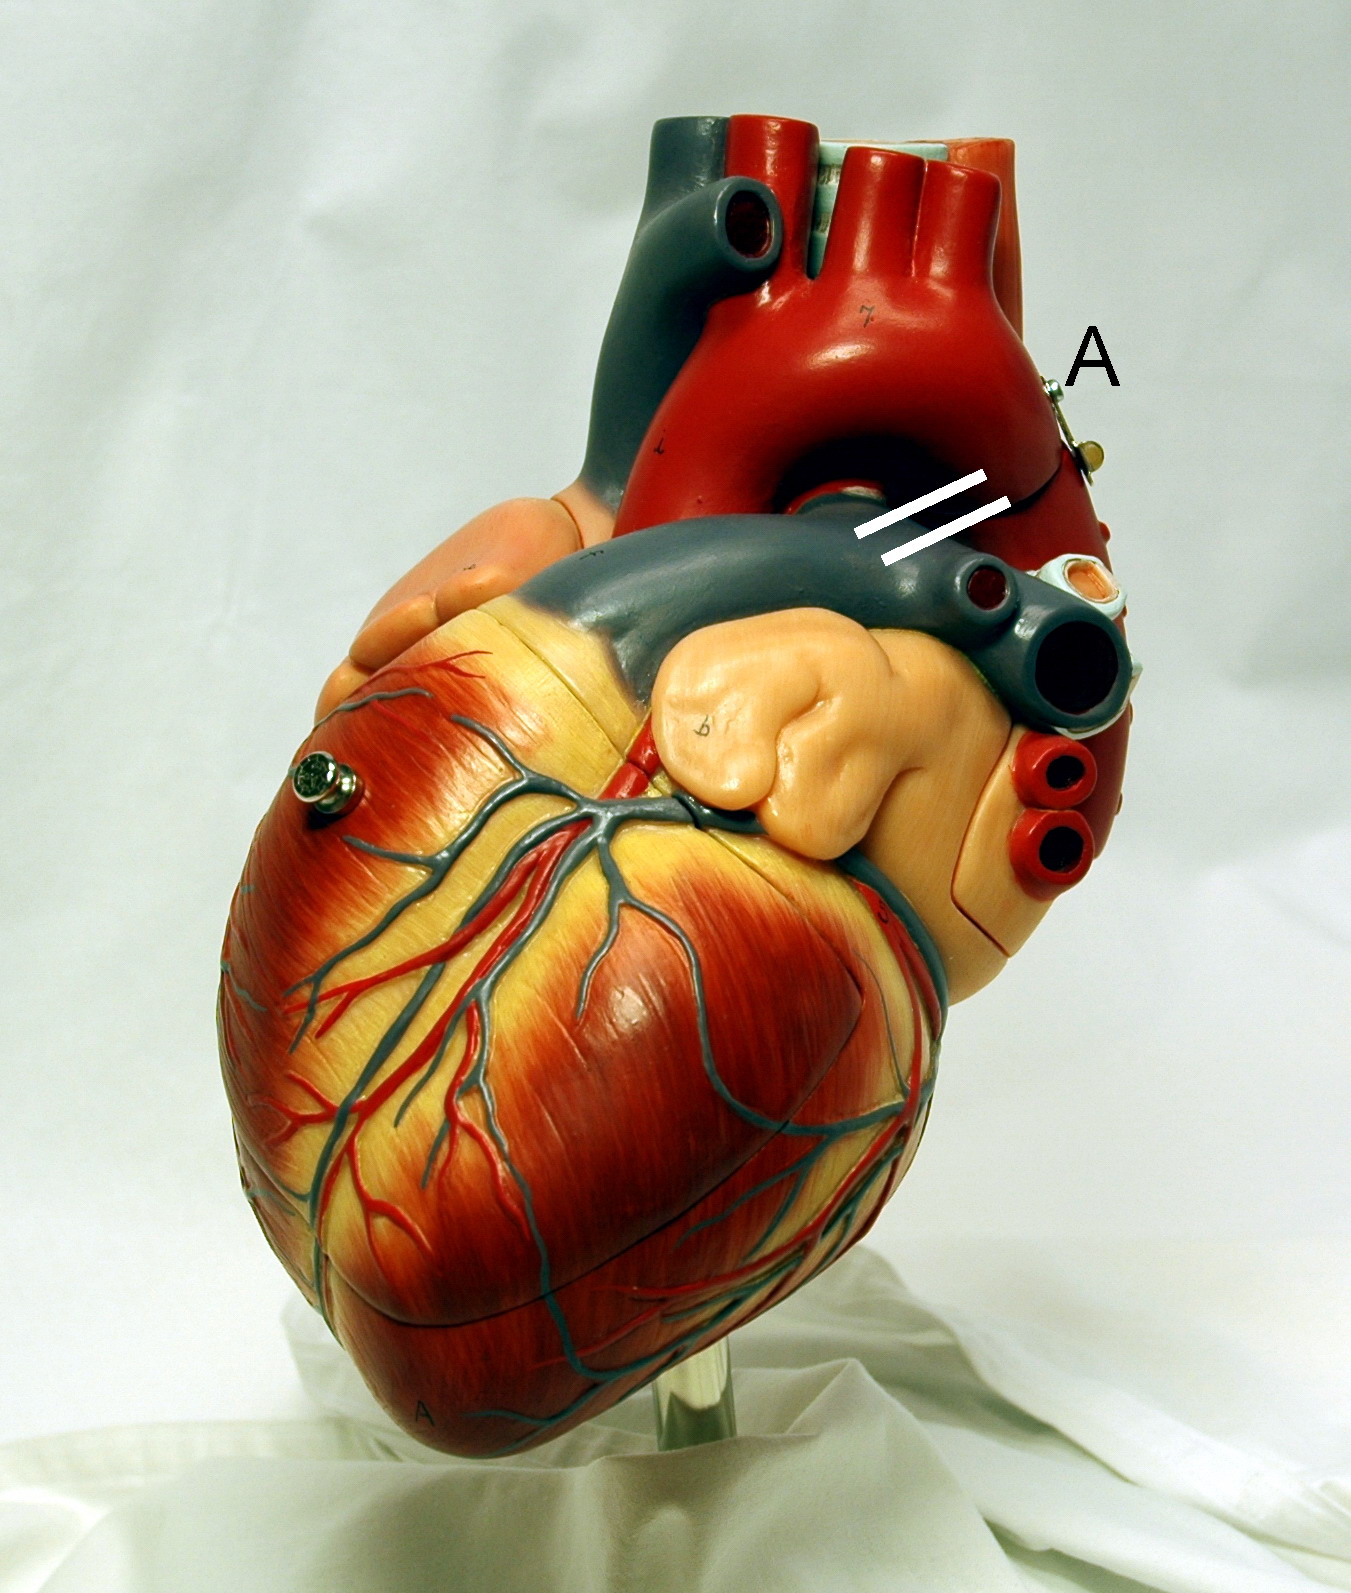 قلب، اندامی ماهیچه‌ای است و شامل آندوکارد، میوکارد و اپی‌کارد است.